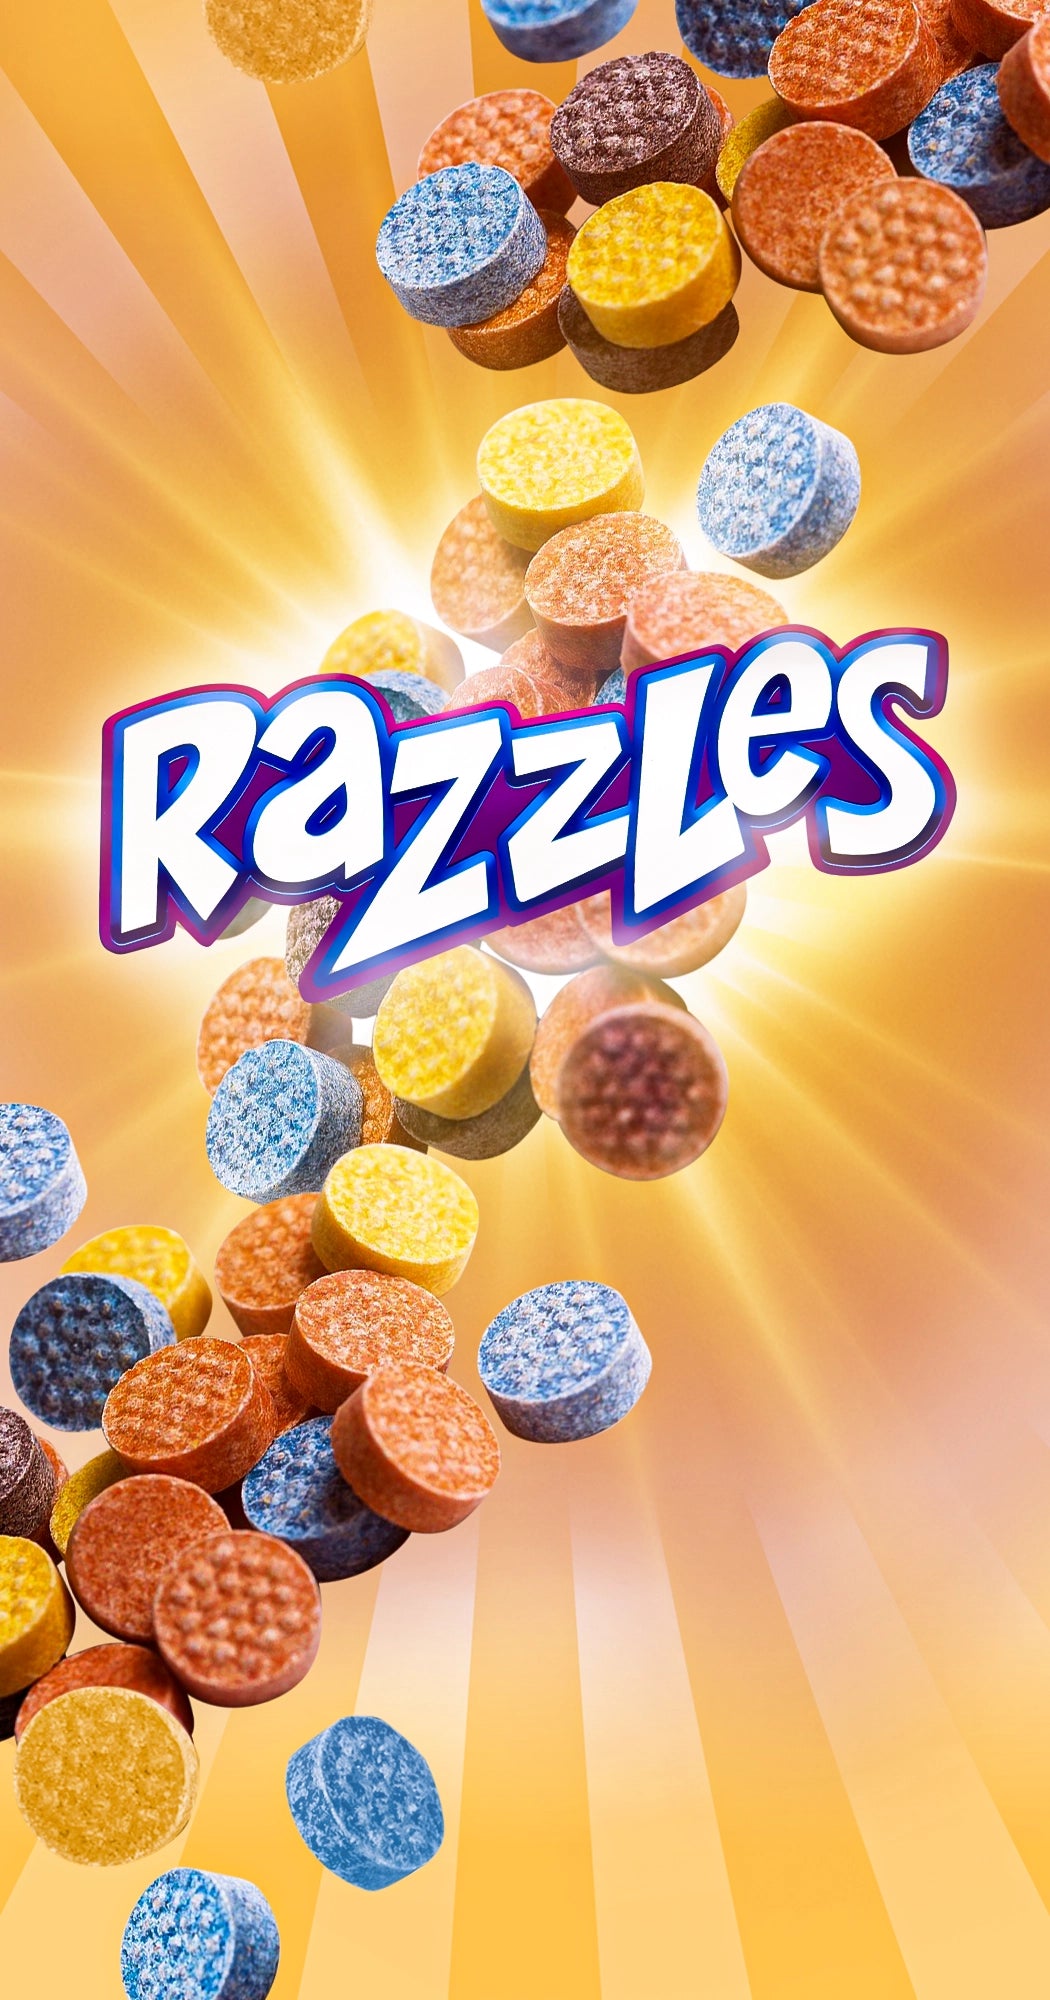 Razzles Banner